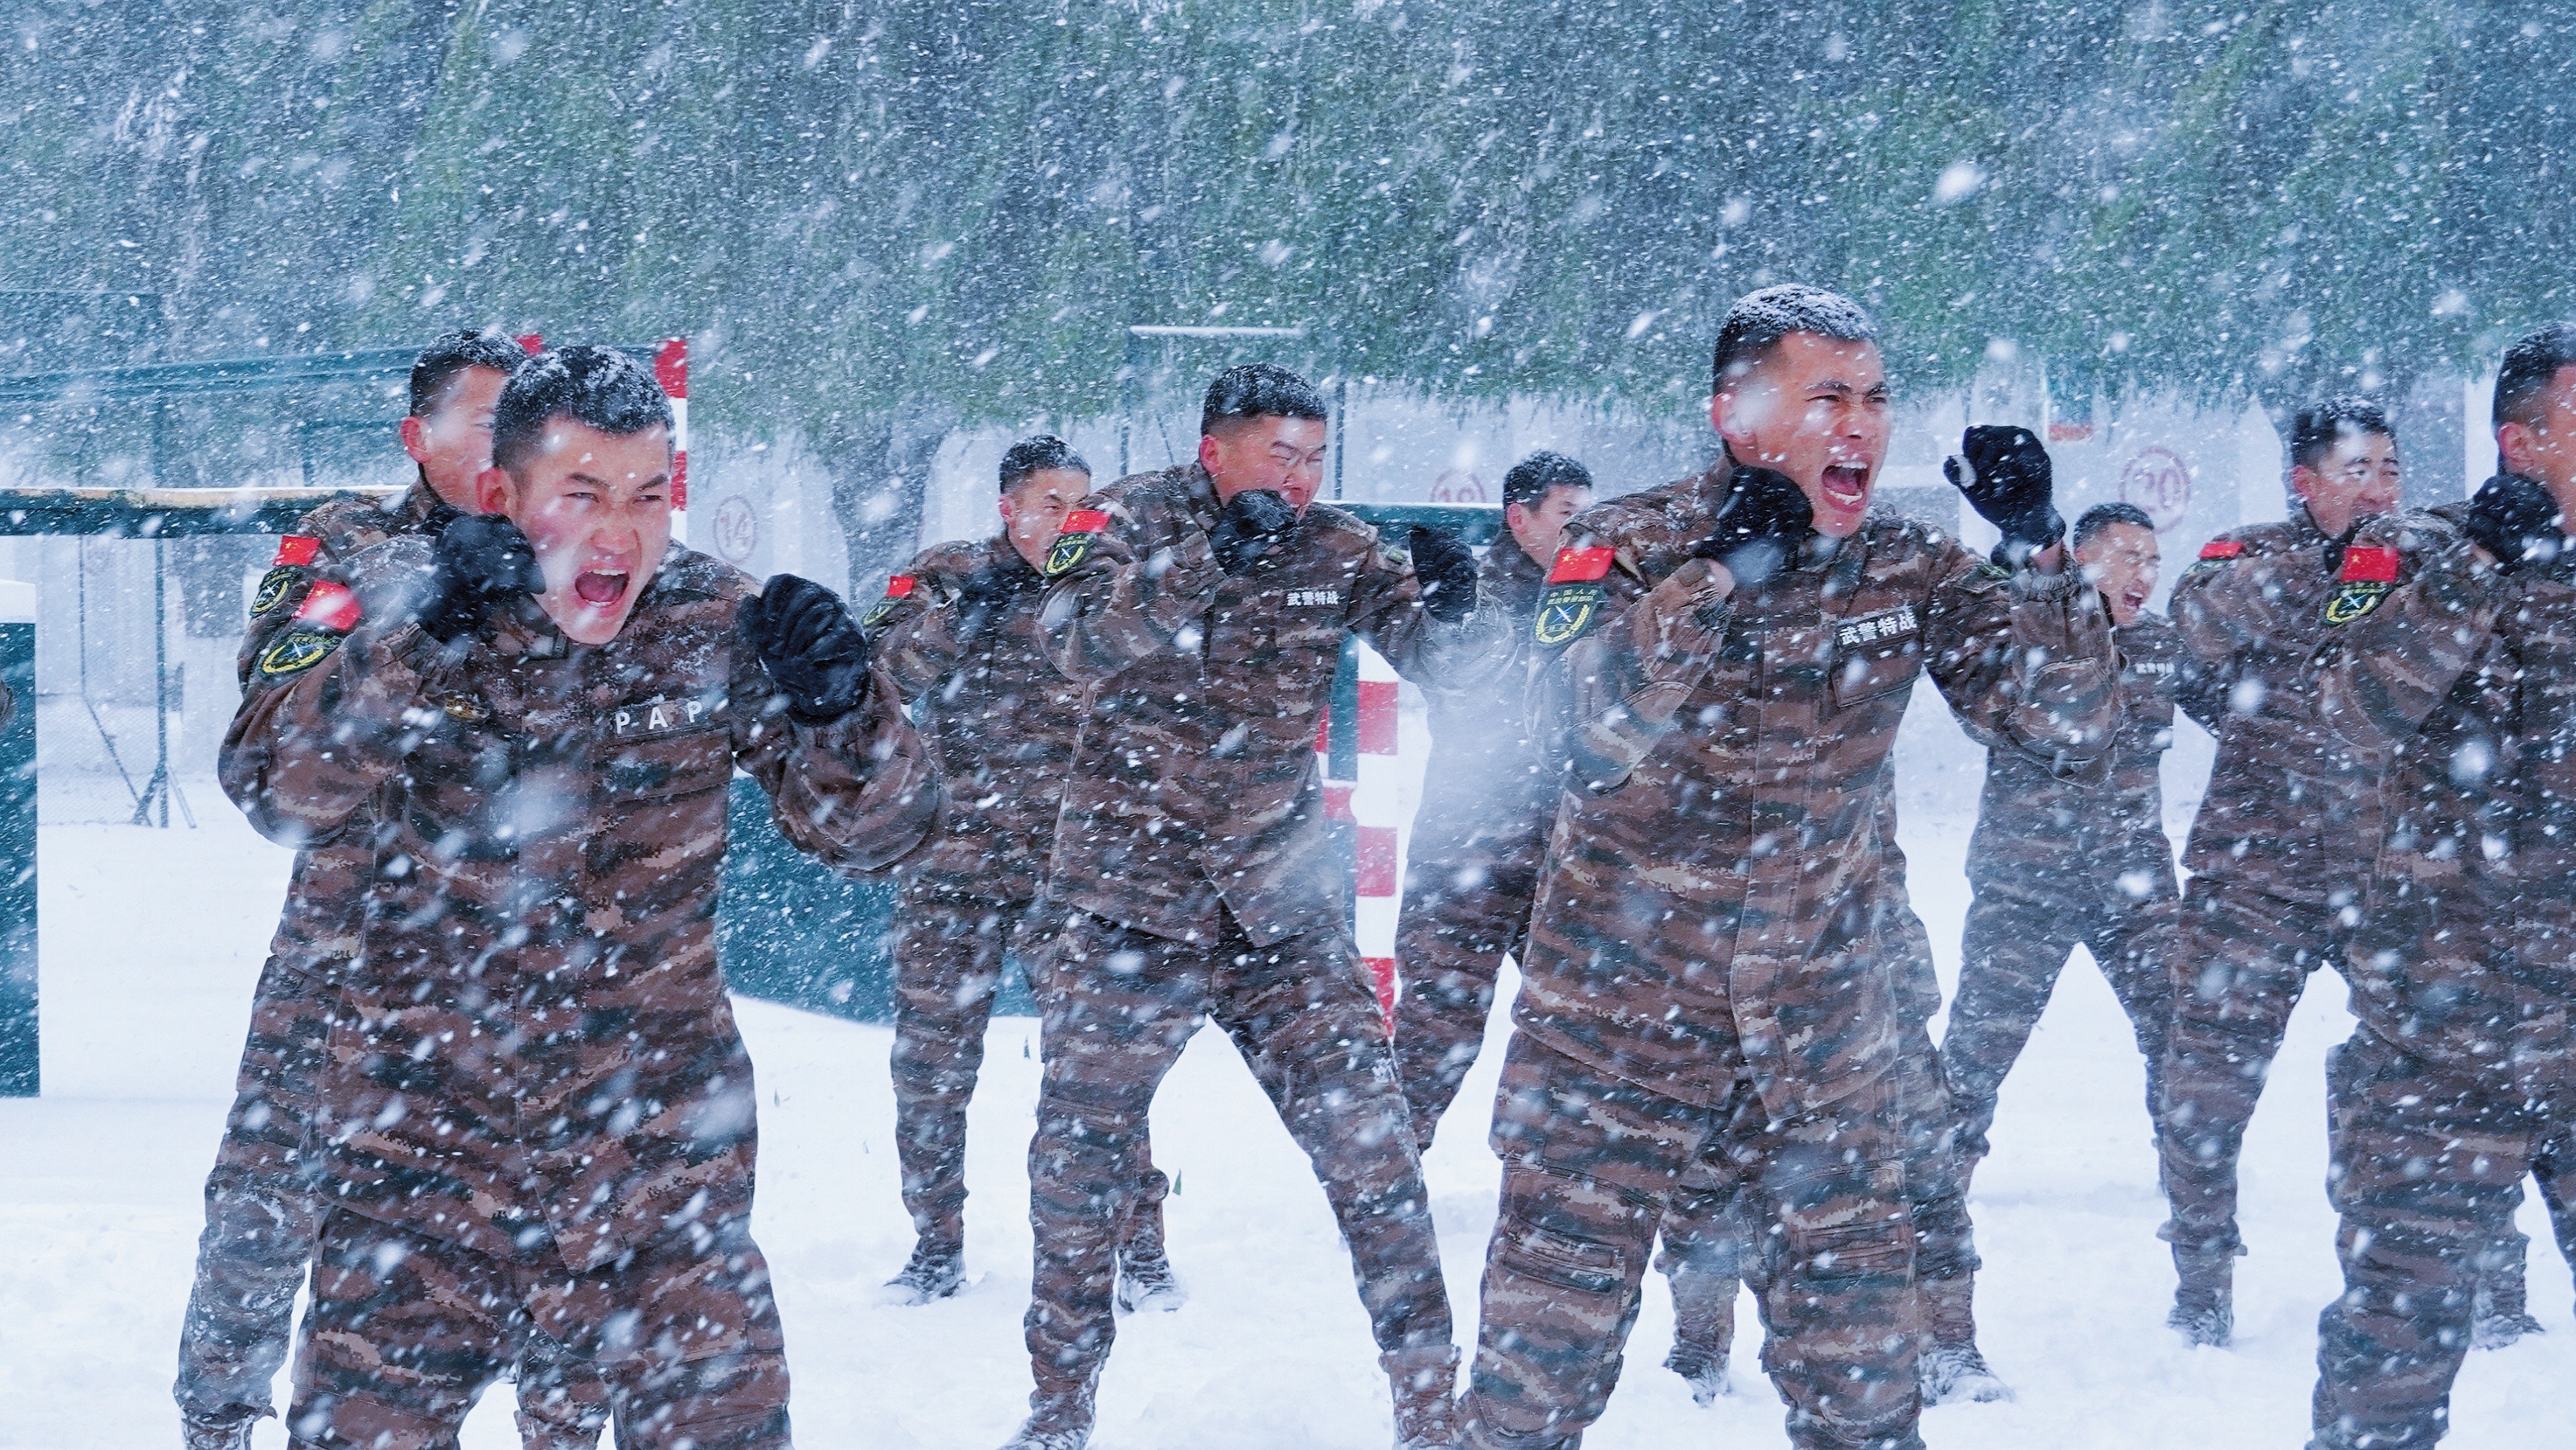 黑龙江迎来暴雪 特战队员严寒中开展雪地搏击训练